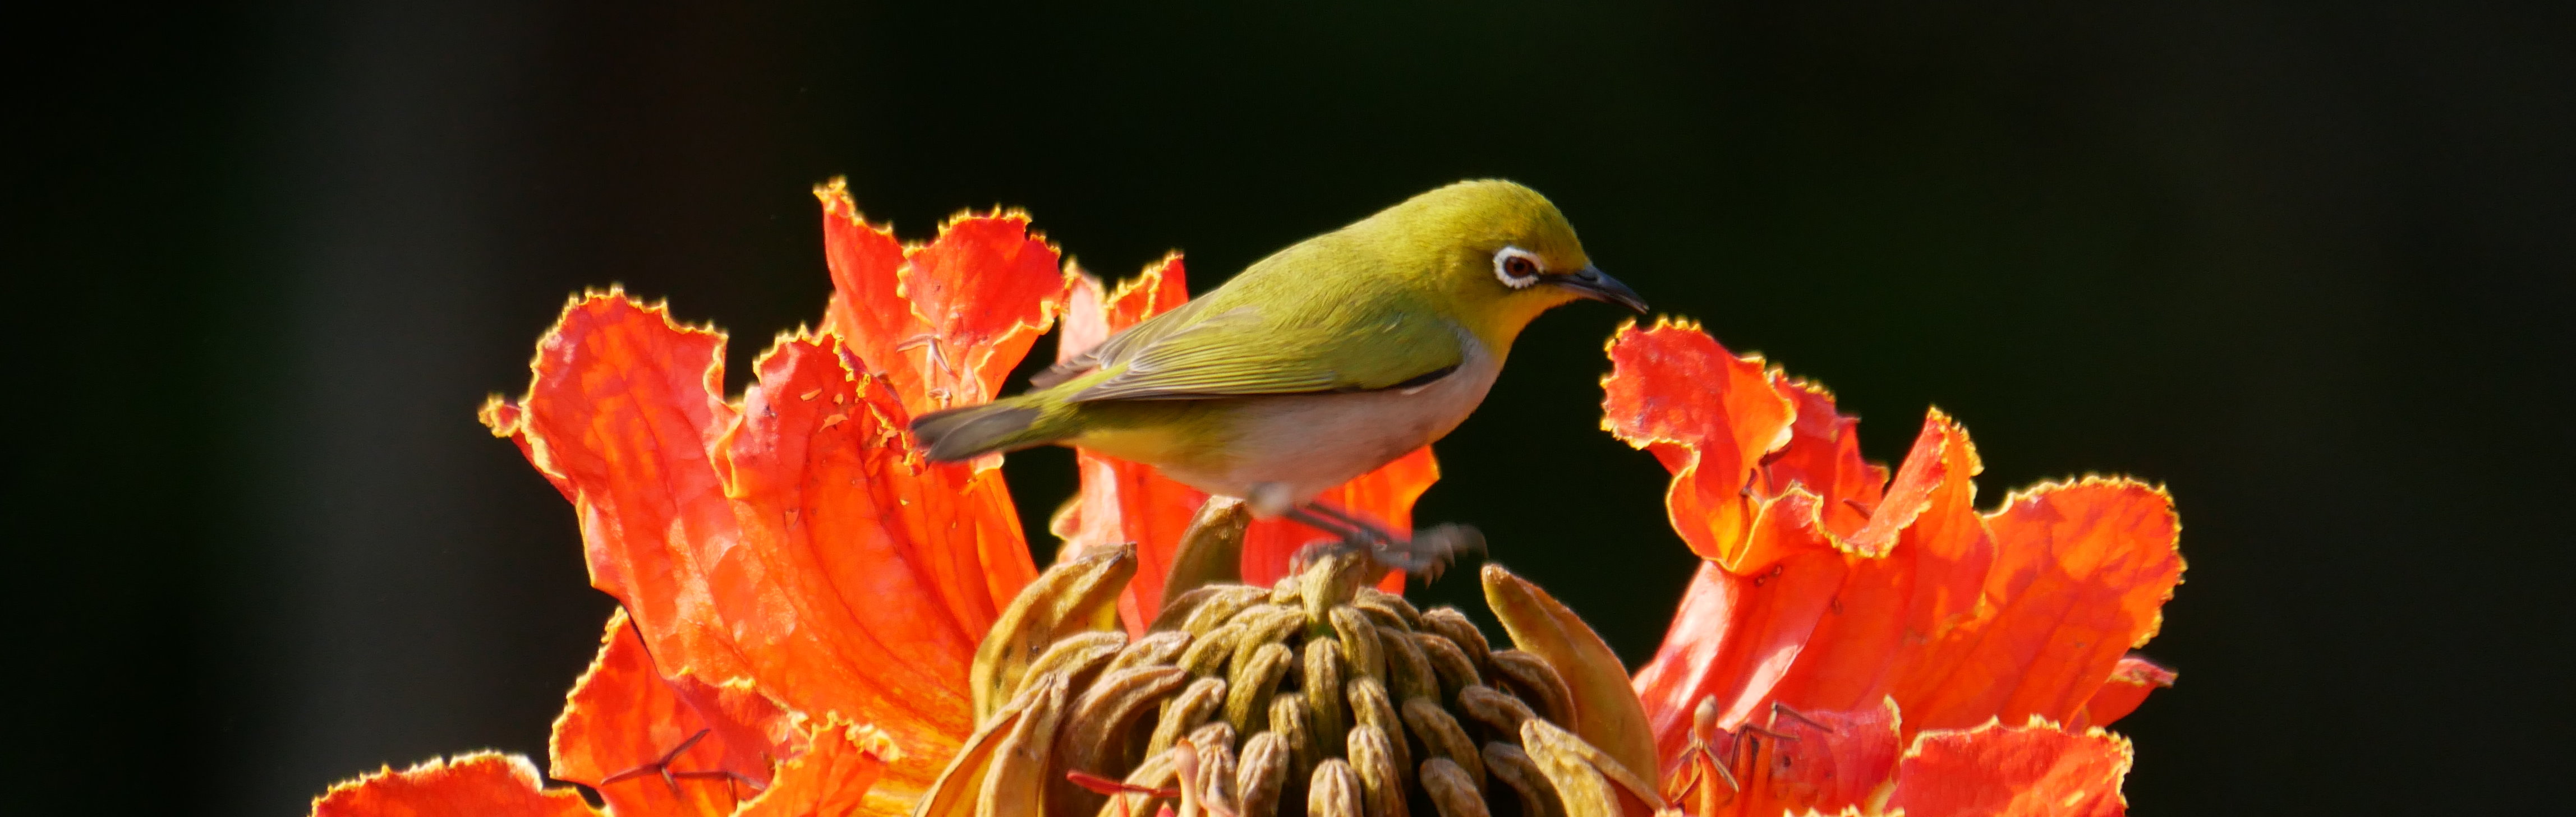 龍津國小常見鳥類--綠繡眼